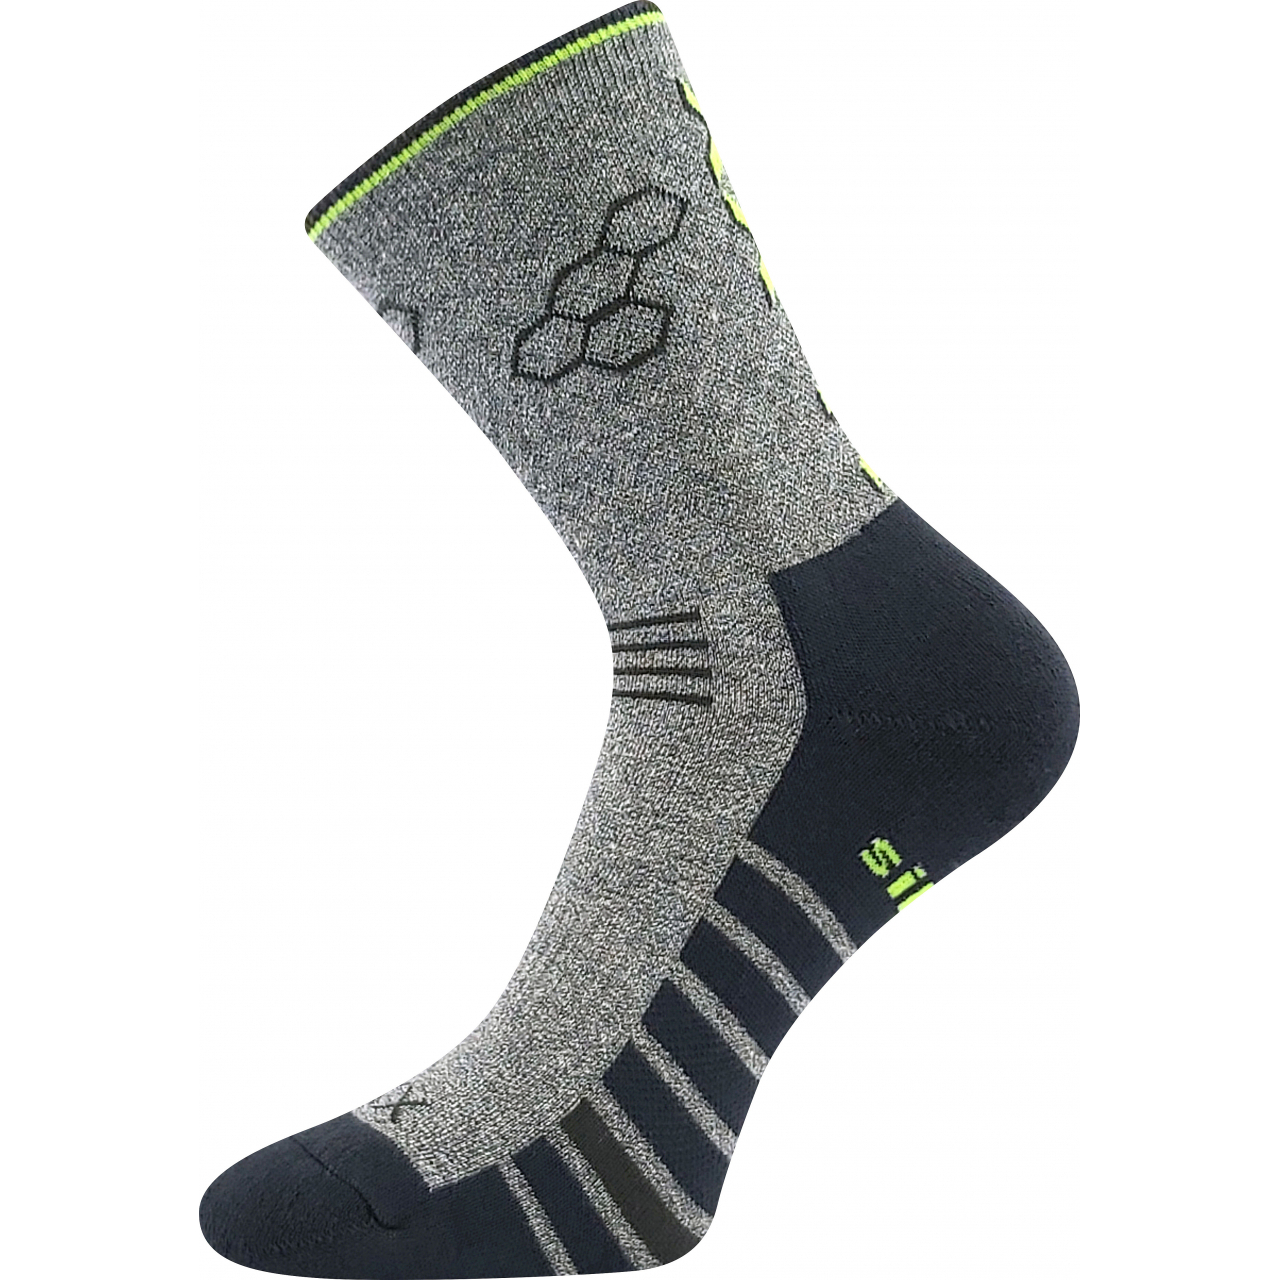 Ponožky sportovní unisex Voxx Virgo - šedé-černé, 35-38